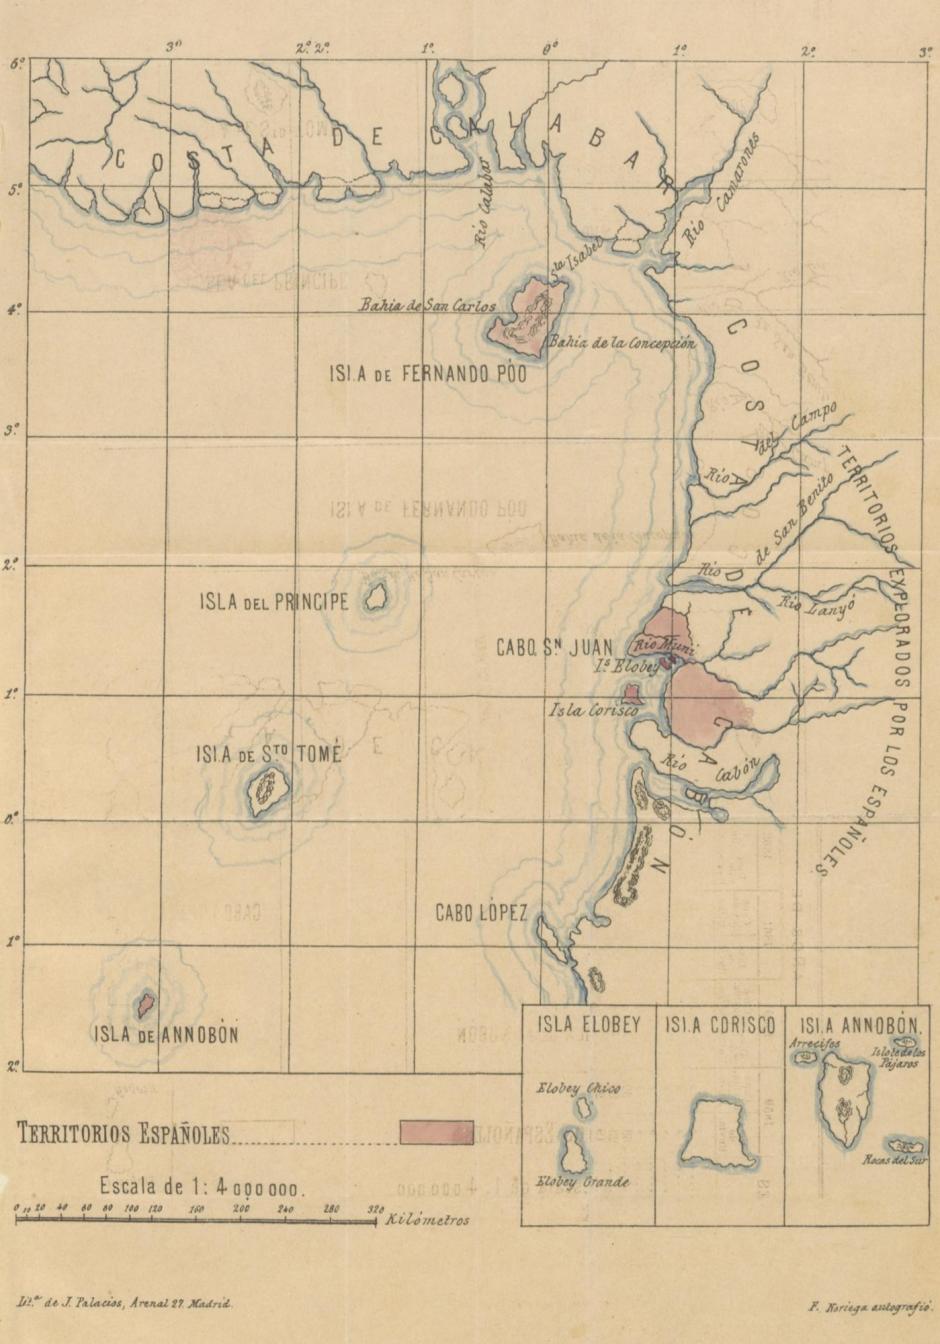 Mapa de las posesiones españolas en el Golfo de Guinea en 1897, antes del Tratado de París de 1900